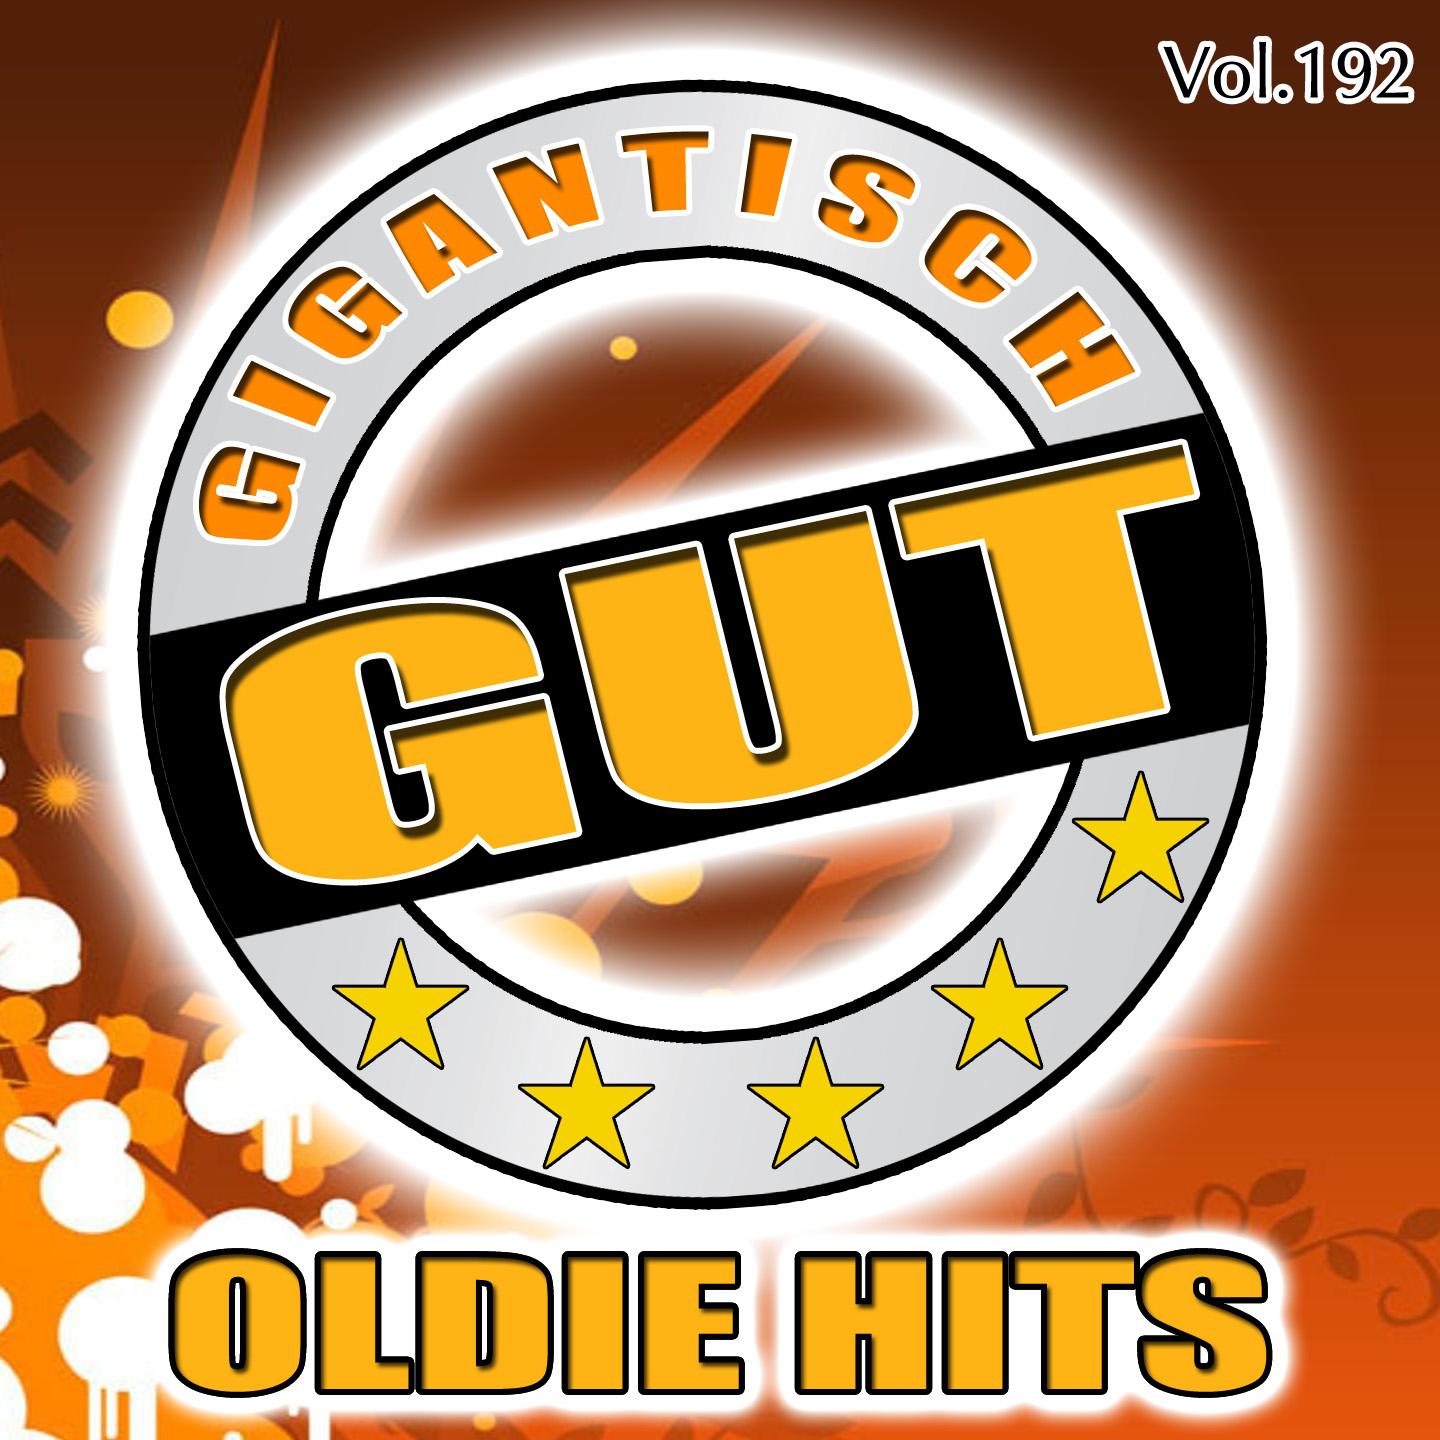 Gigantisch Gut: Oldie Hits, Vol. 192